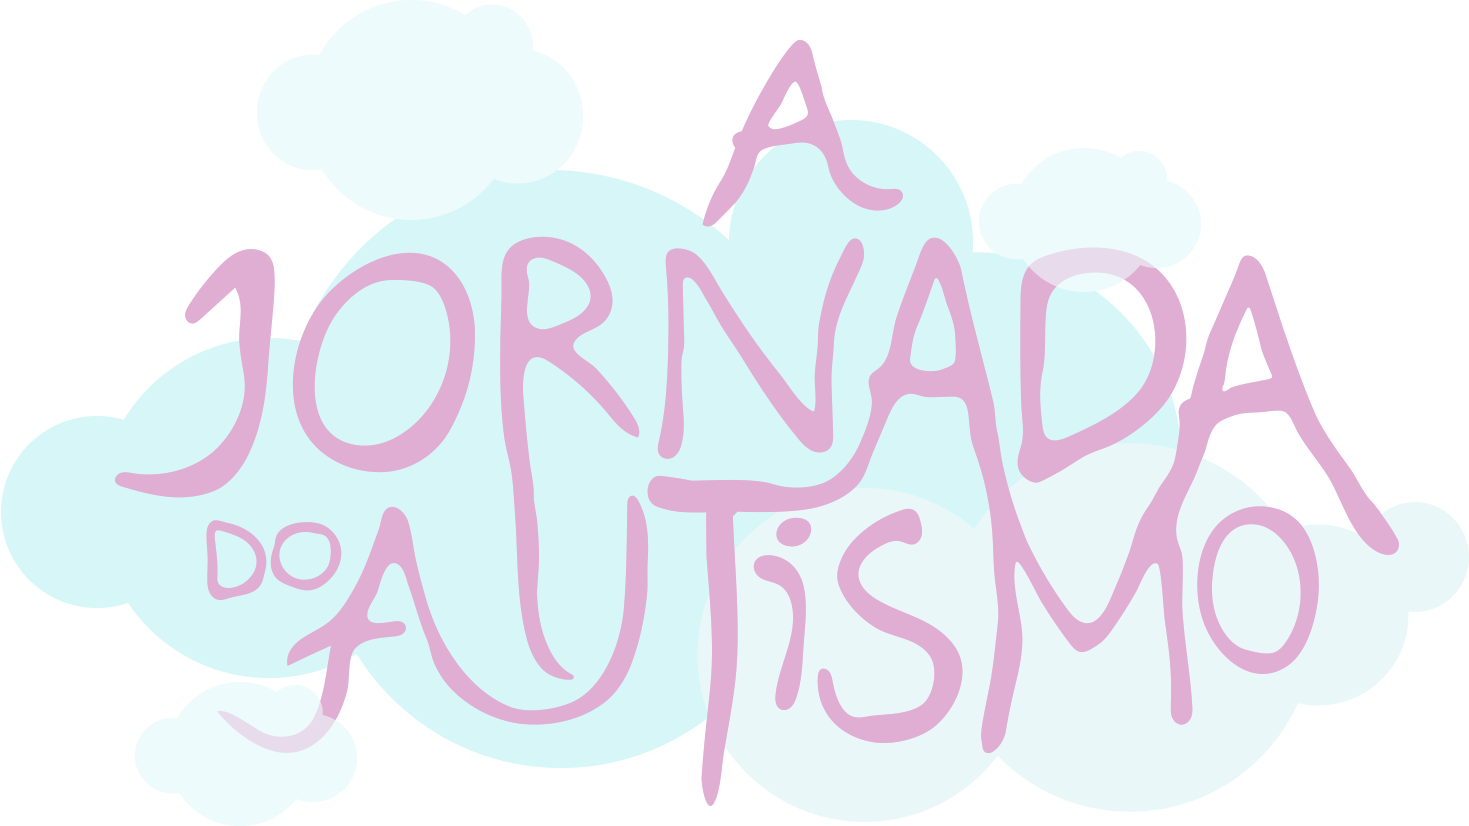 The Autism journey - Crie flashcards para ajudar na comunicação de autistas